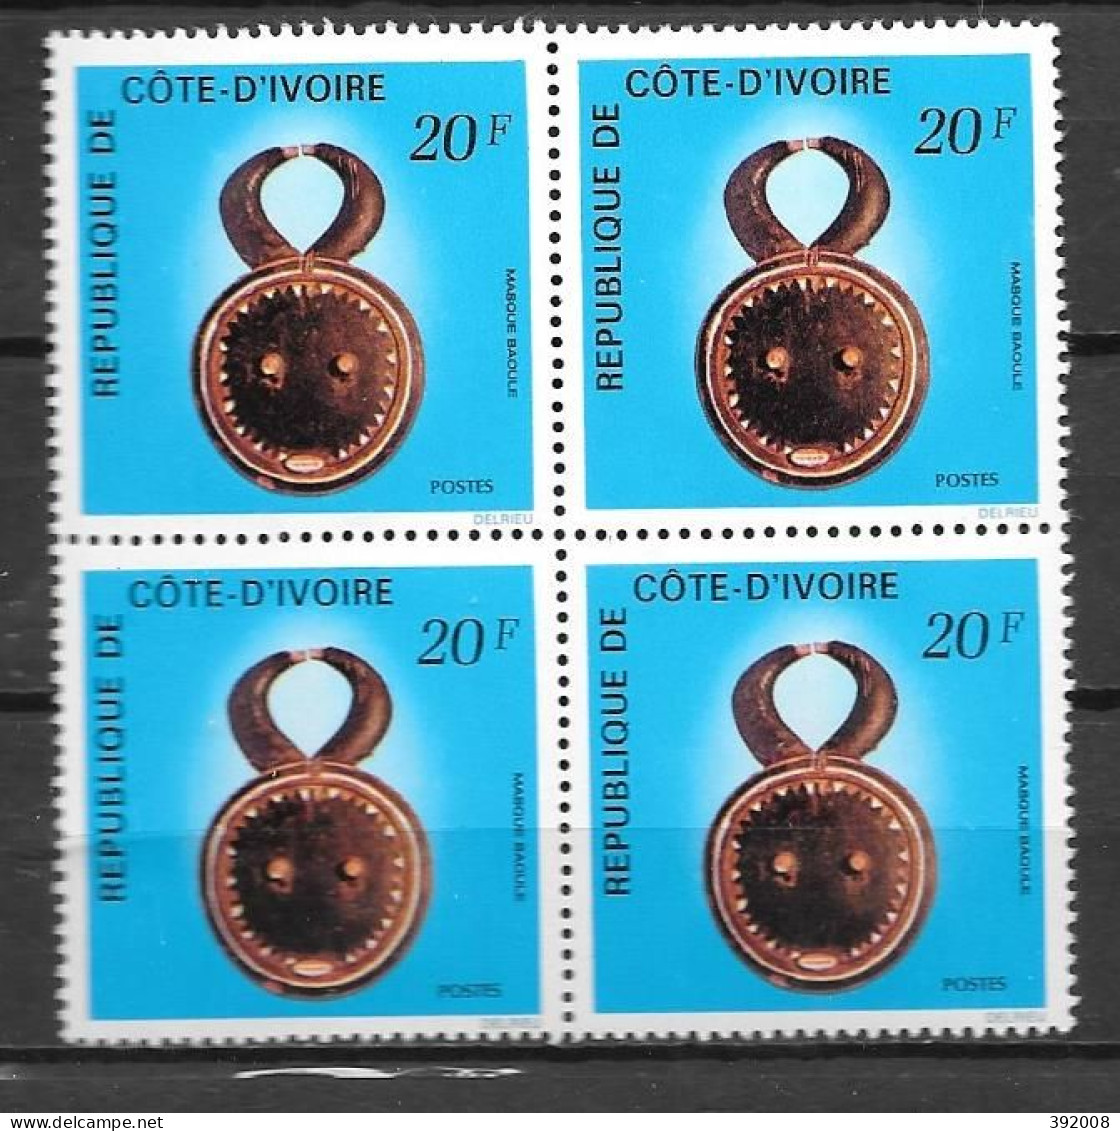 1976 - N° 399**MNH - Art Ivoirien - Bloc De 4 - 4 - Côte D'Ivoire (1960-...)